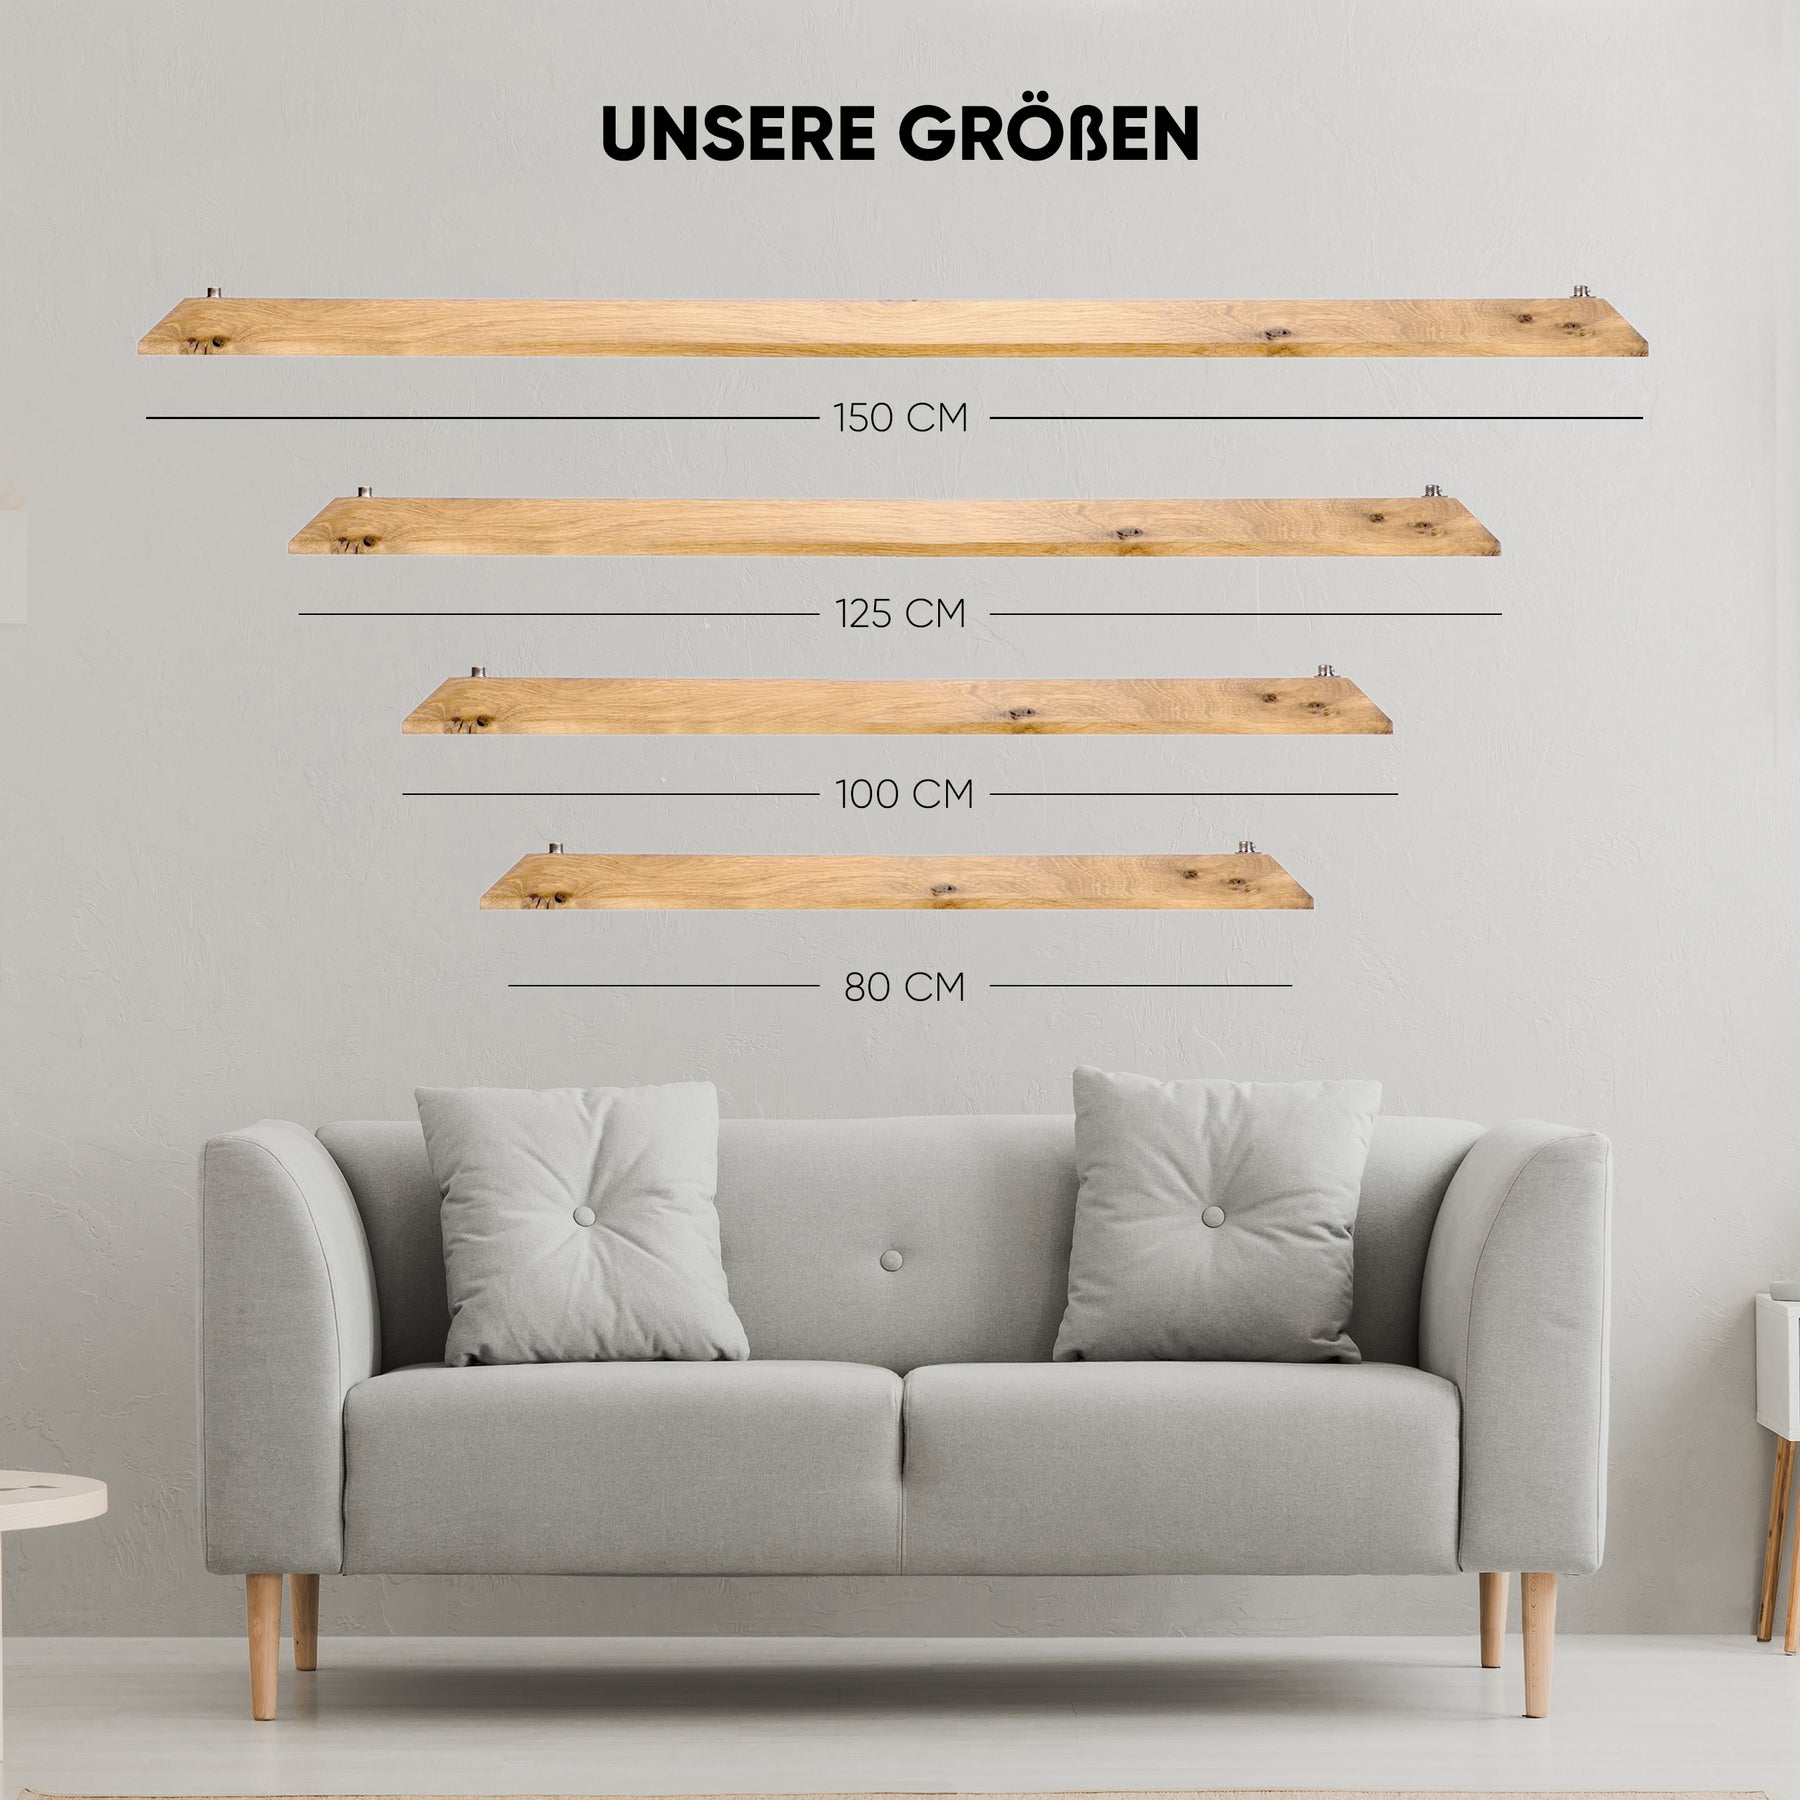 Bild mit 4 unterschiedlichen Größen unserer Designer Pendelleuchte aus Massivholz, Die Größe 150 cm , 125 cm, 100 cm und 80 cm.